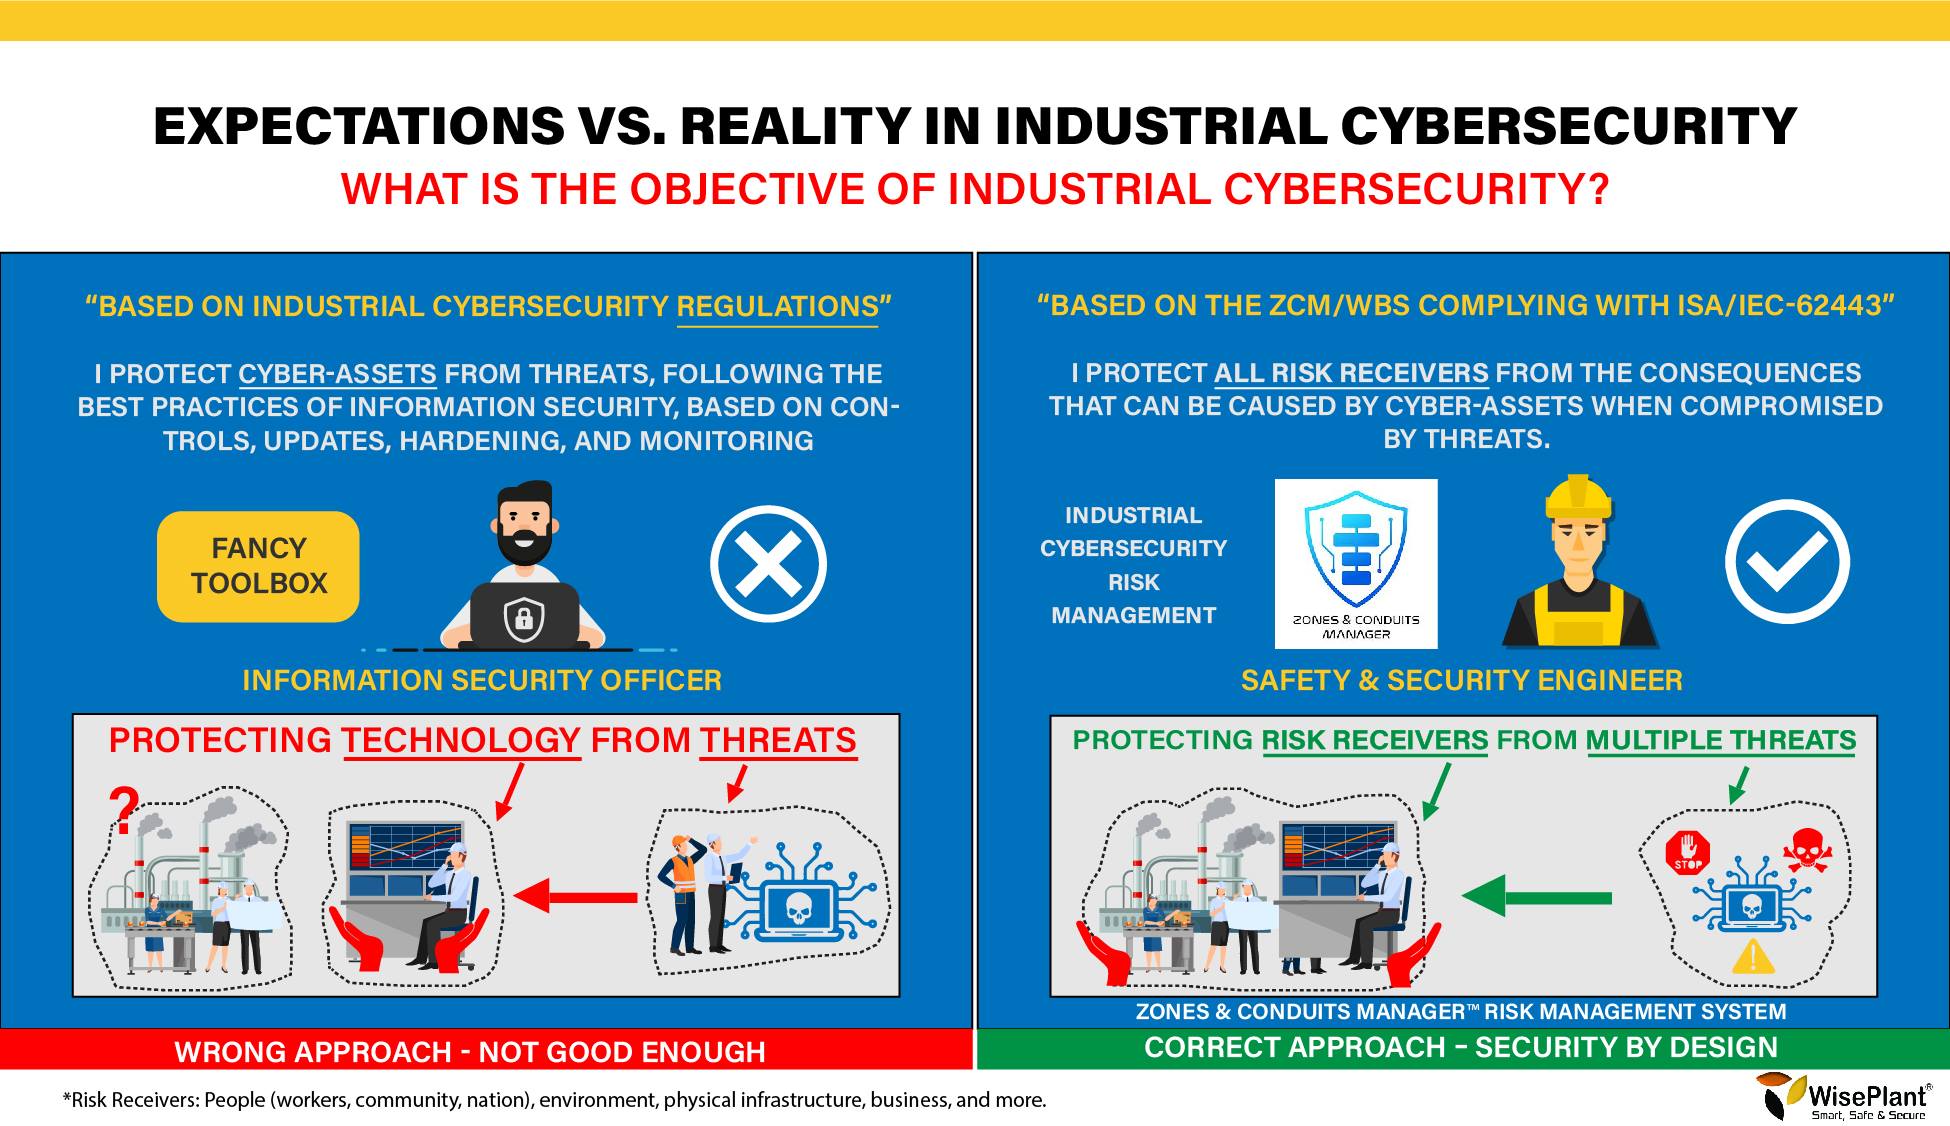 ¿Cuál es el Objetivo de su Programa de Ciberseguridad Industrial? 3